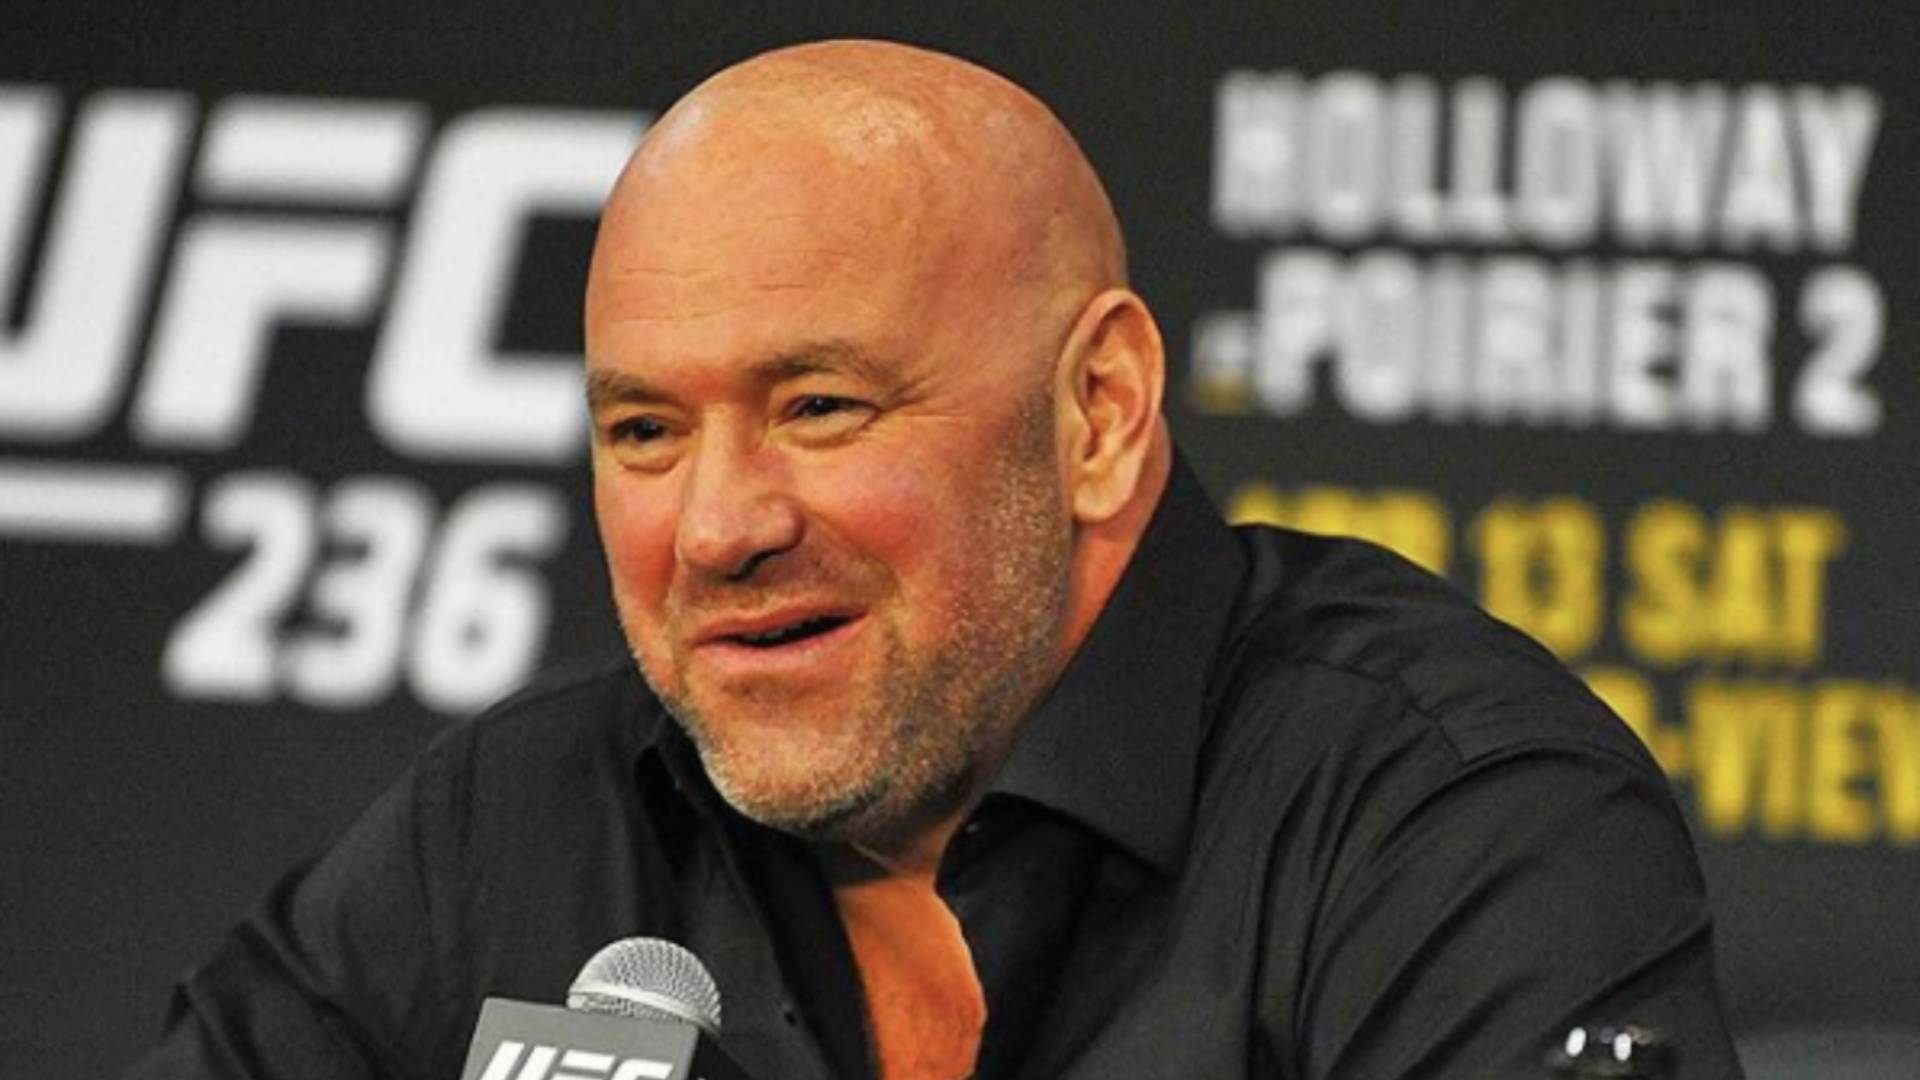 Prezident UFC má veľké plány, chce organizovať zápasy na súkromnom ostrove